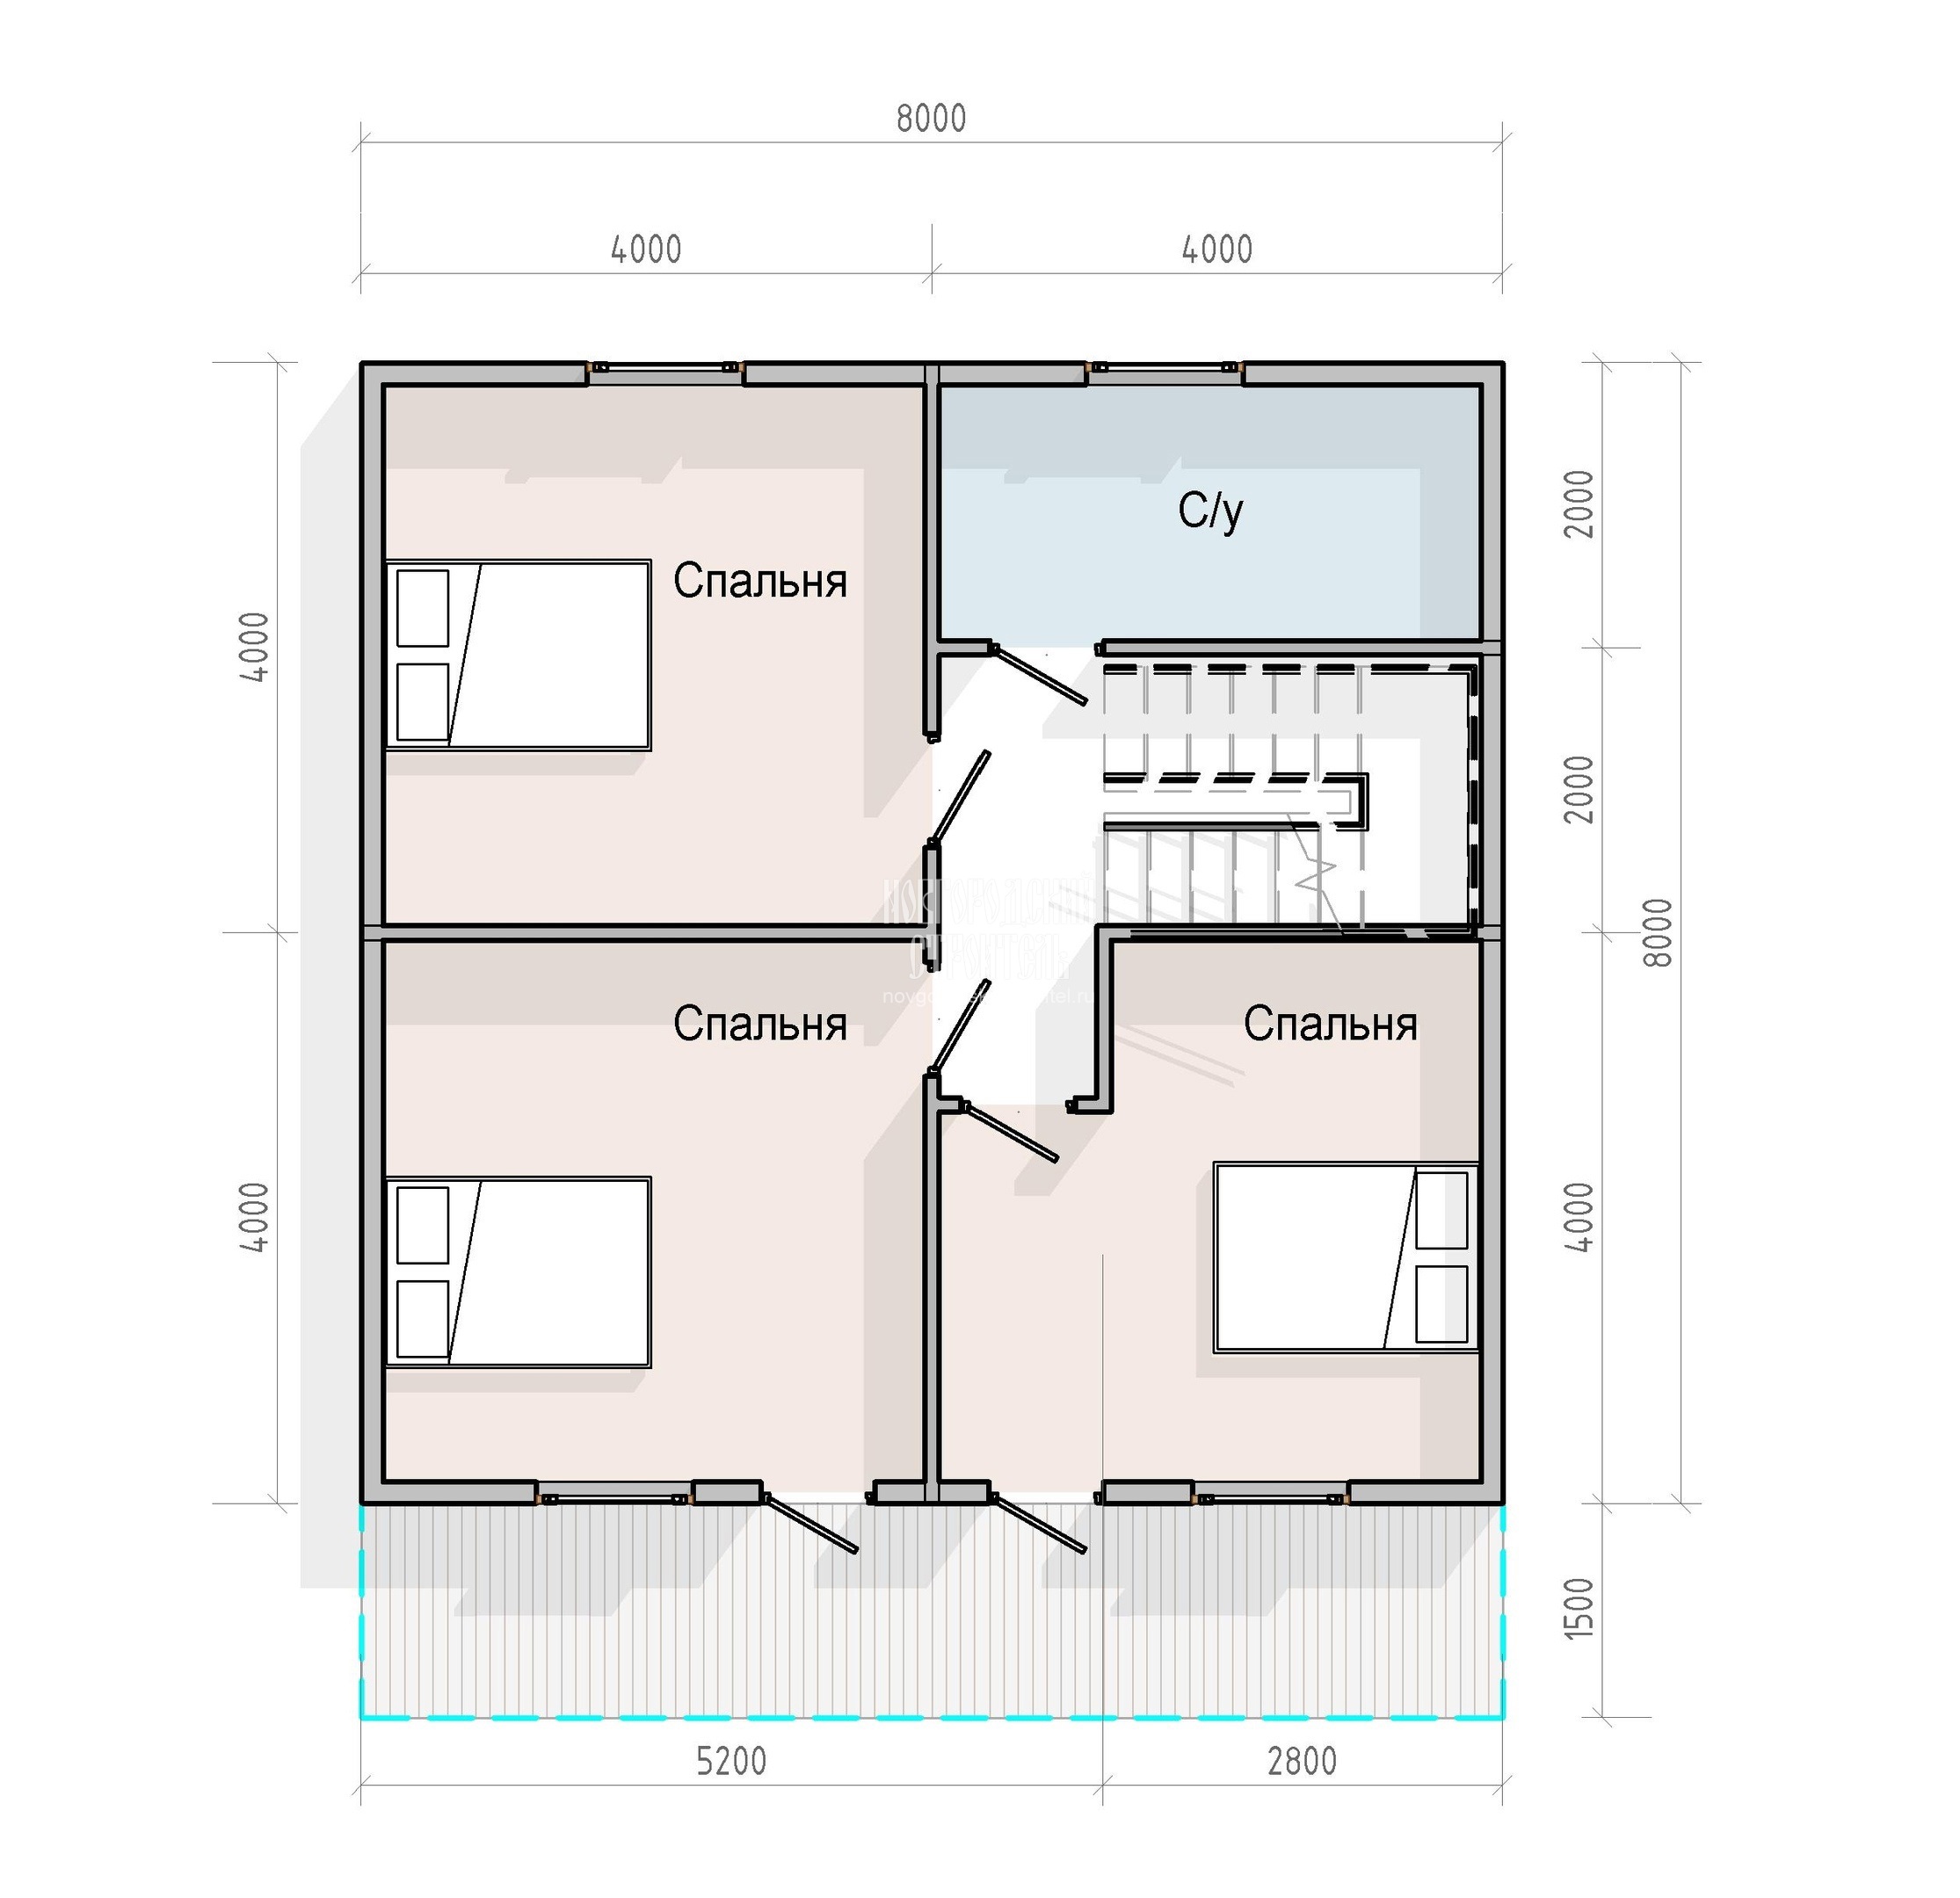 Проект полутораэтажного каркасного дома 8х9.5 с двумя санузлами и котельной - планировка